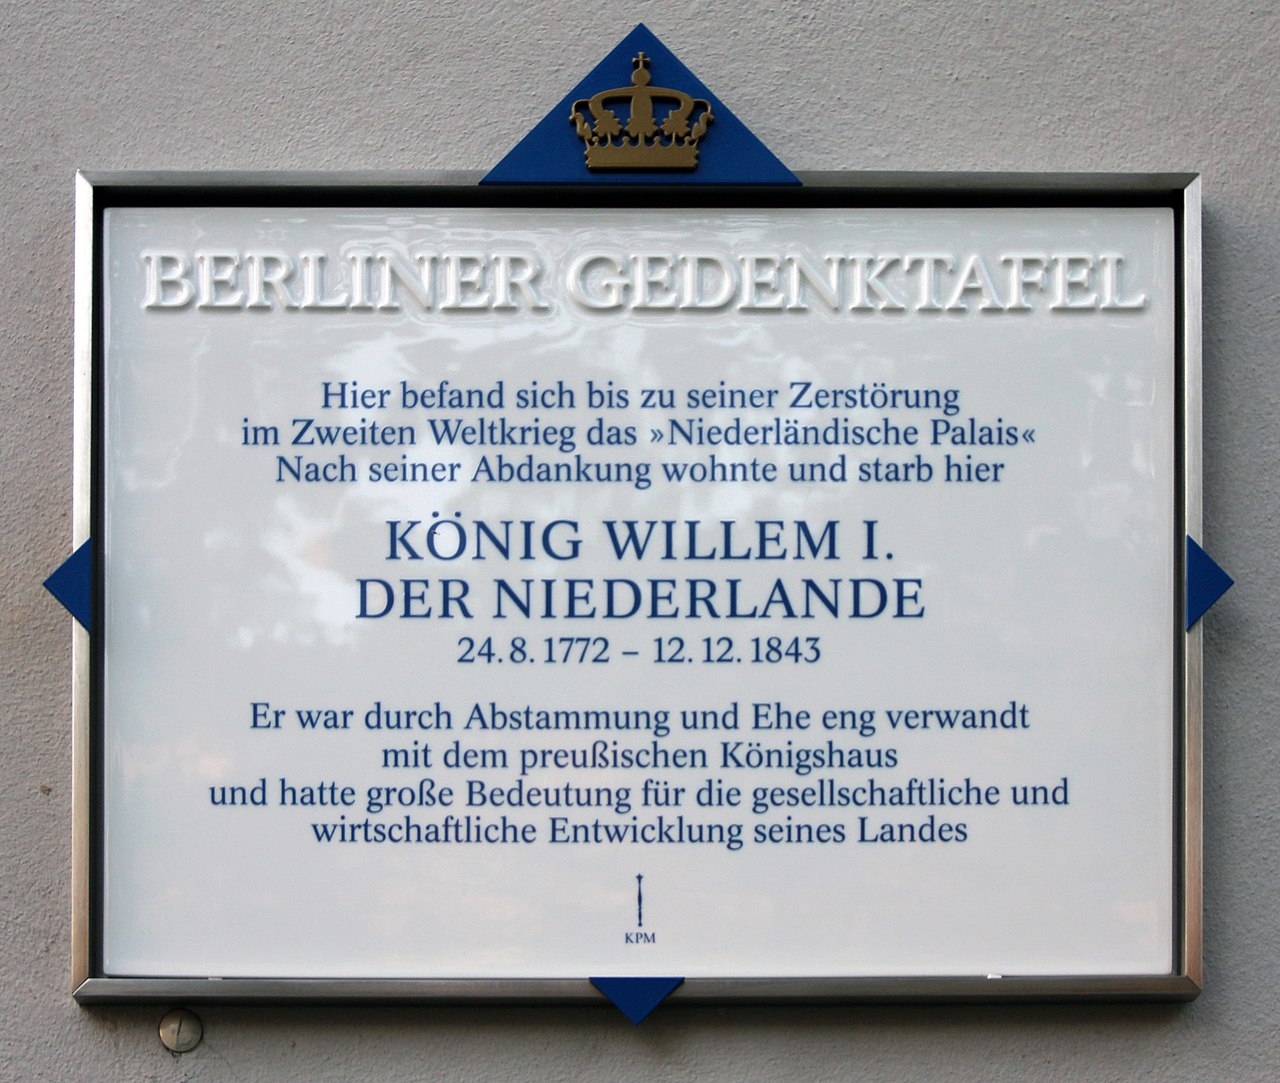 Berliner Gedenktafel am Haus Unter der Linden 11, in Berlin Mitte. (Bild aus JEWIKI)